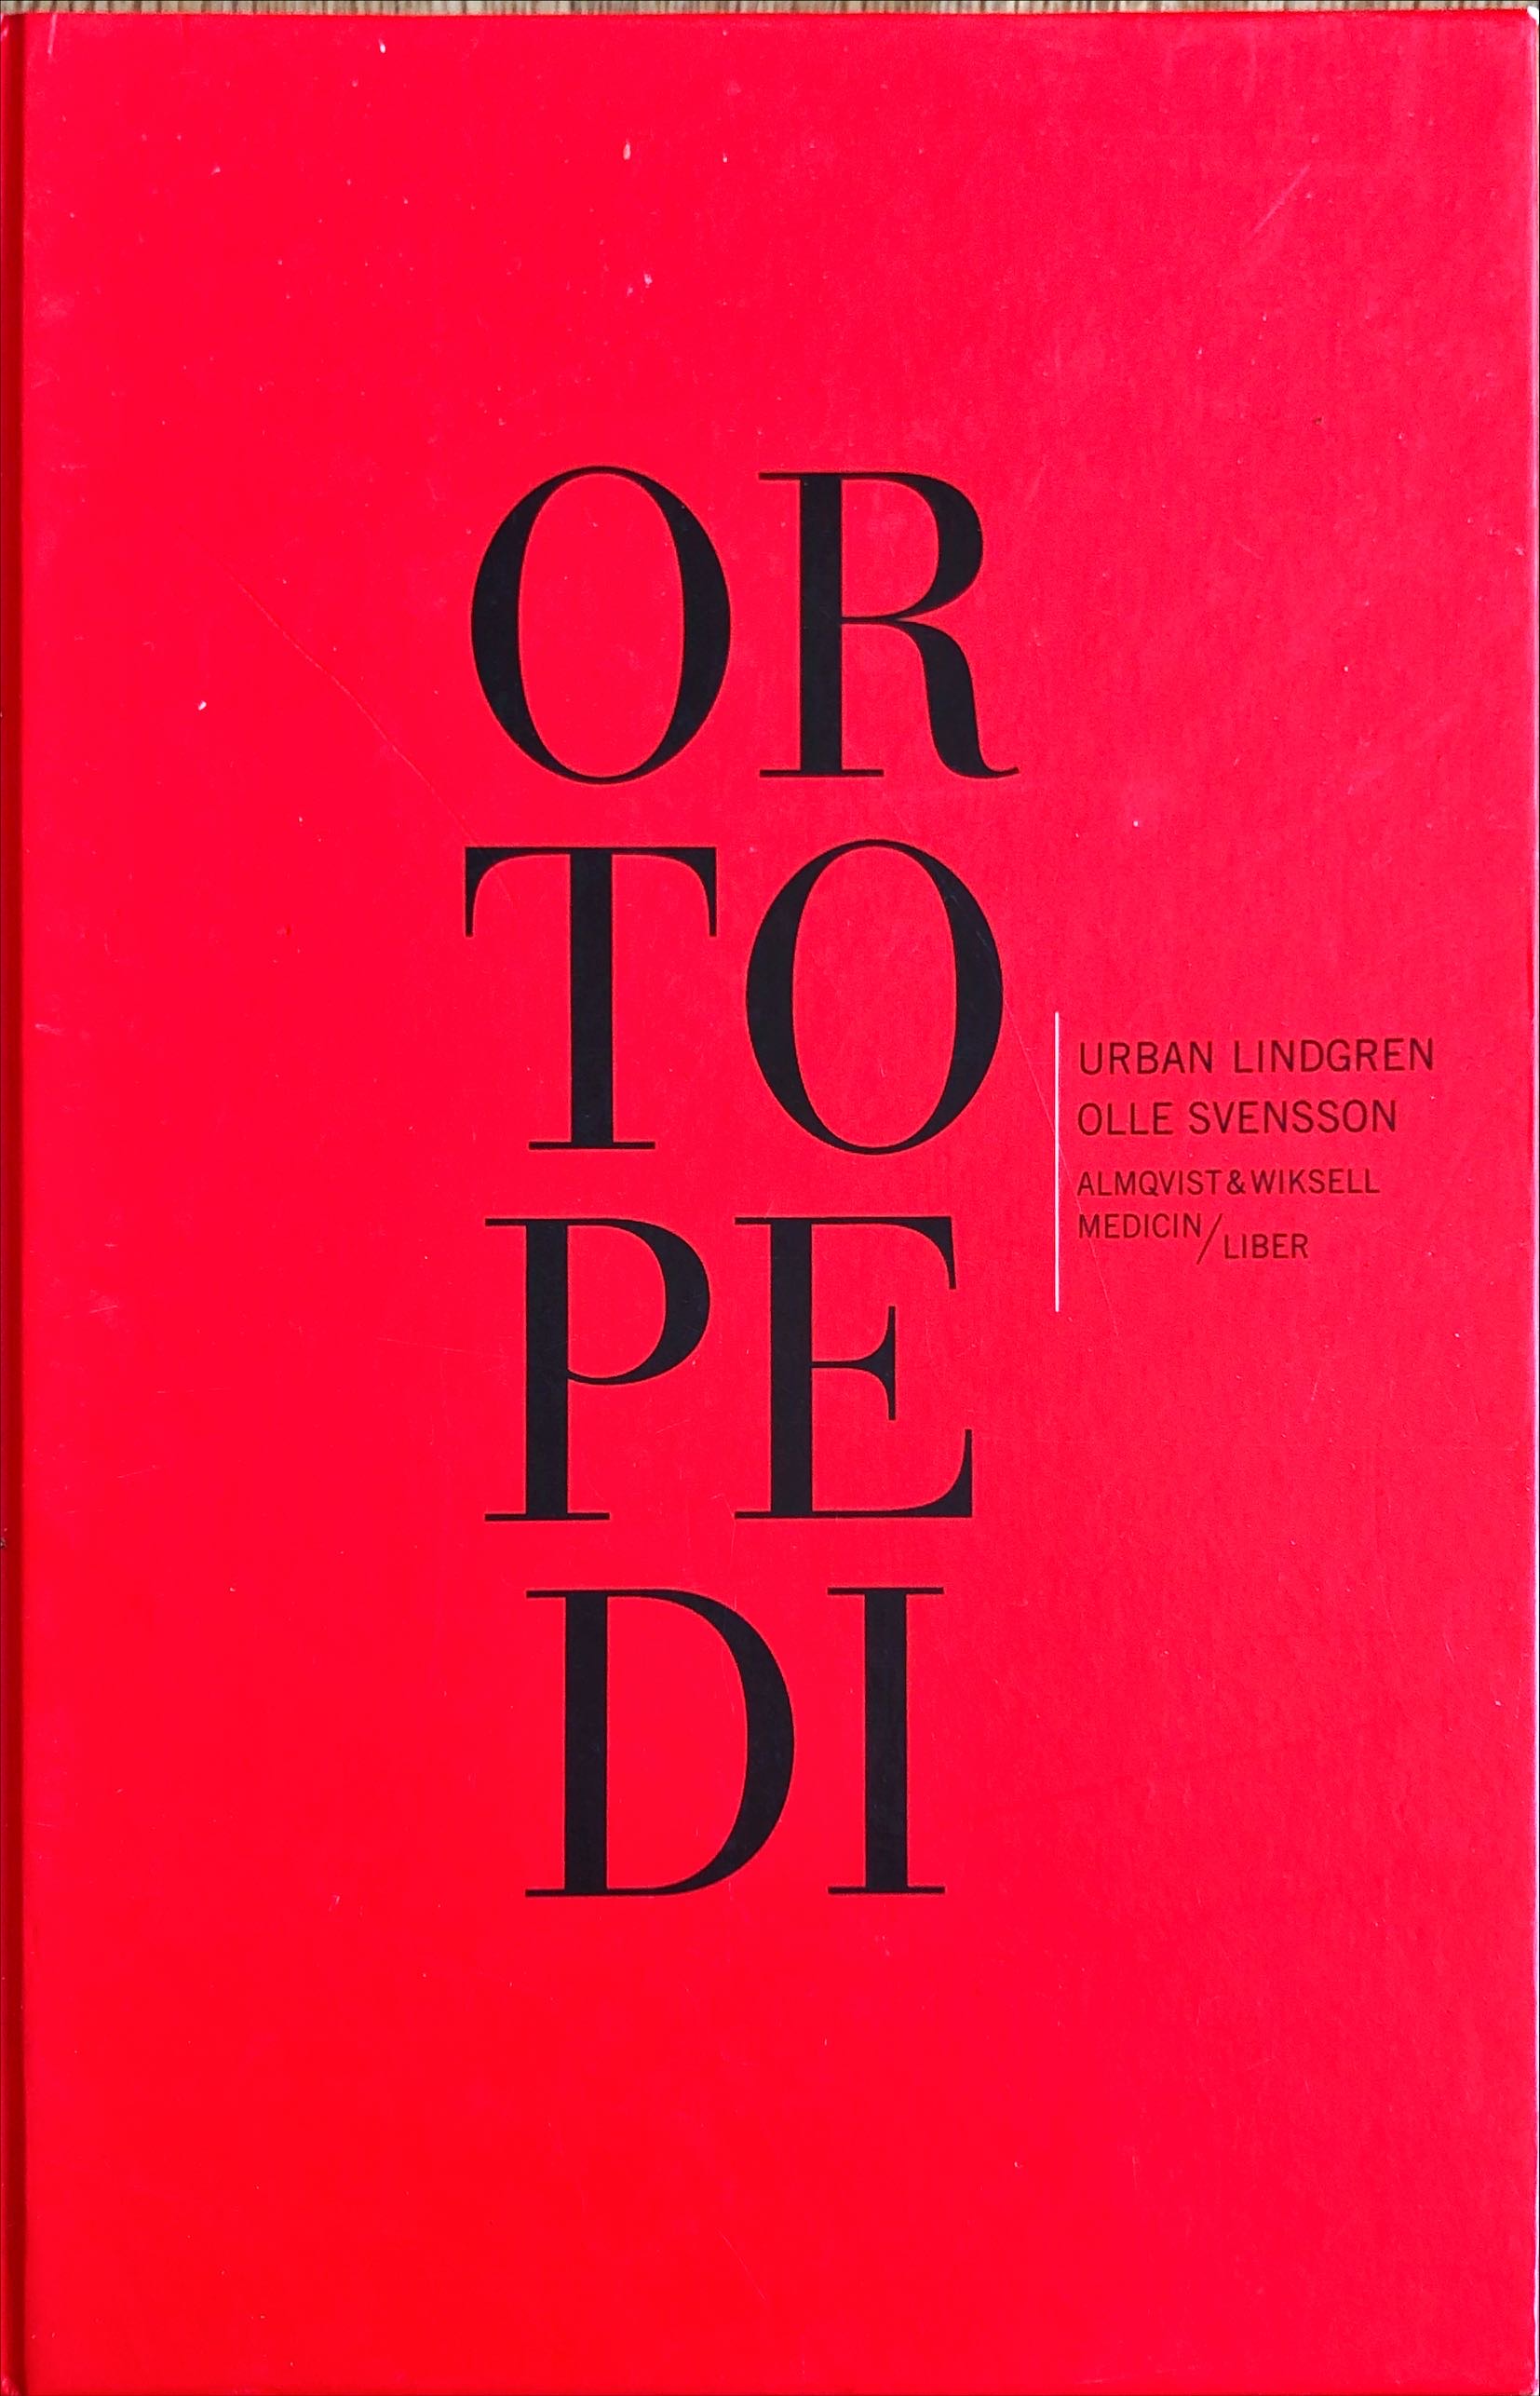 Ortopedi; Urban Lindgren, Olle Svensson; 1996